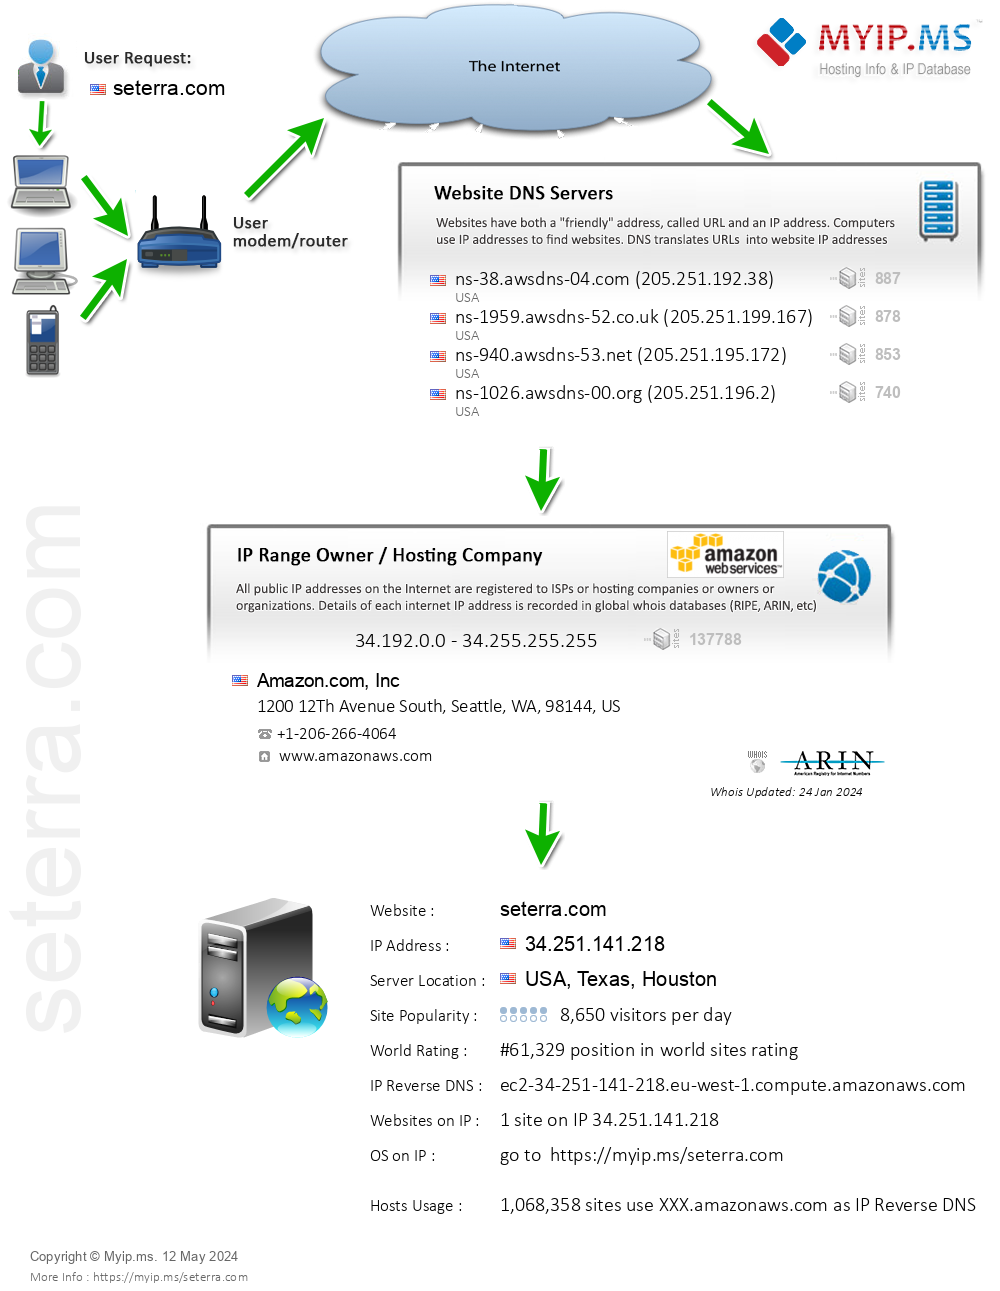 Seterra.com - Website Hosting Visual IP Diagram